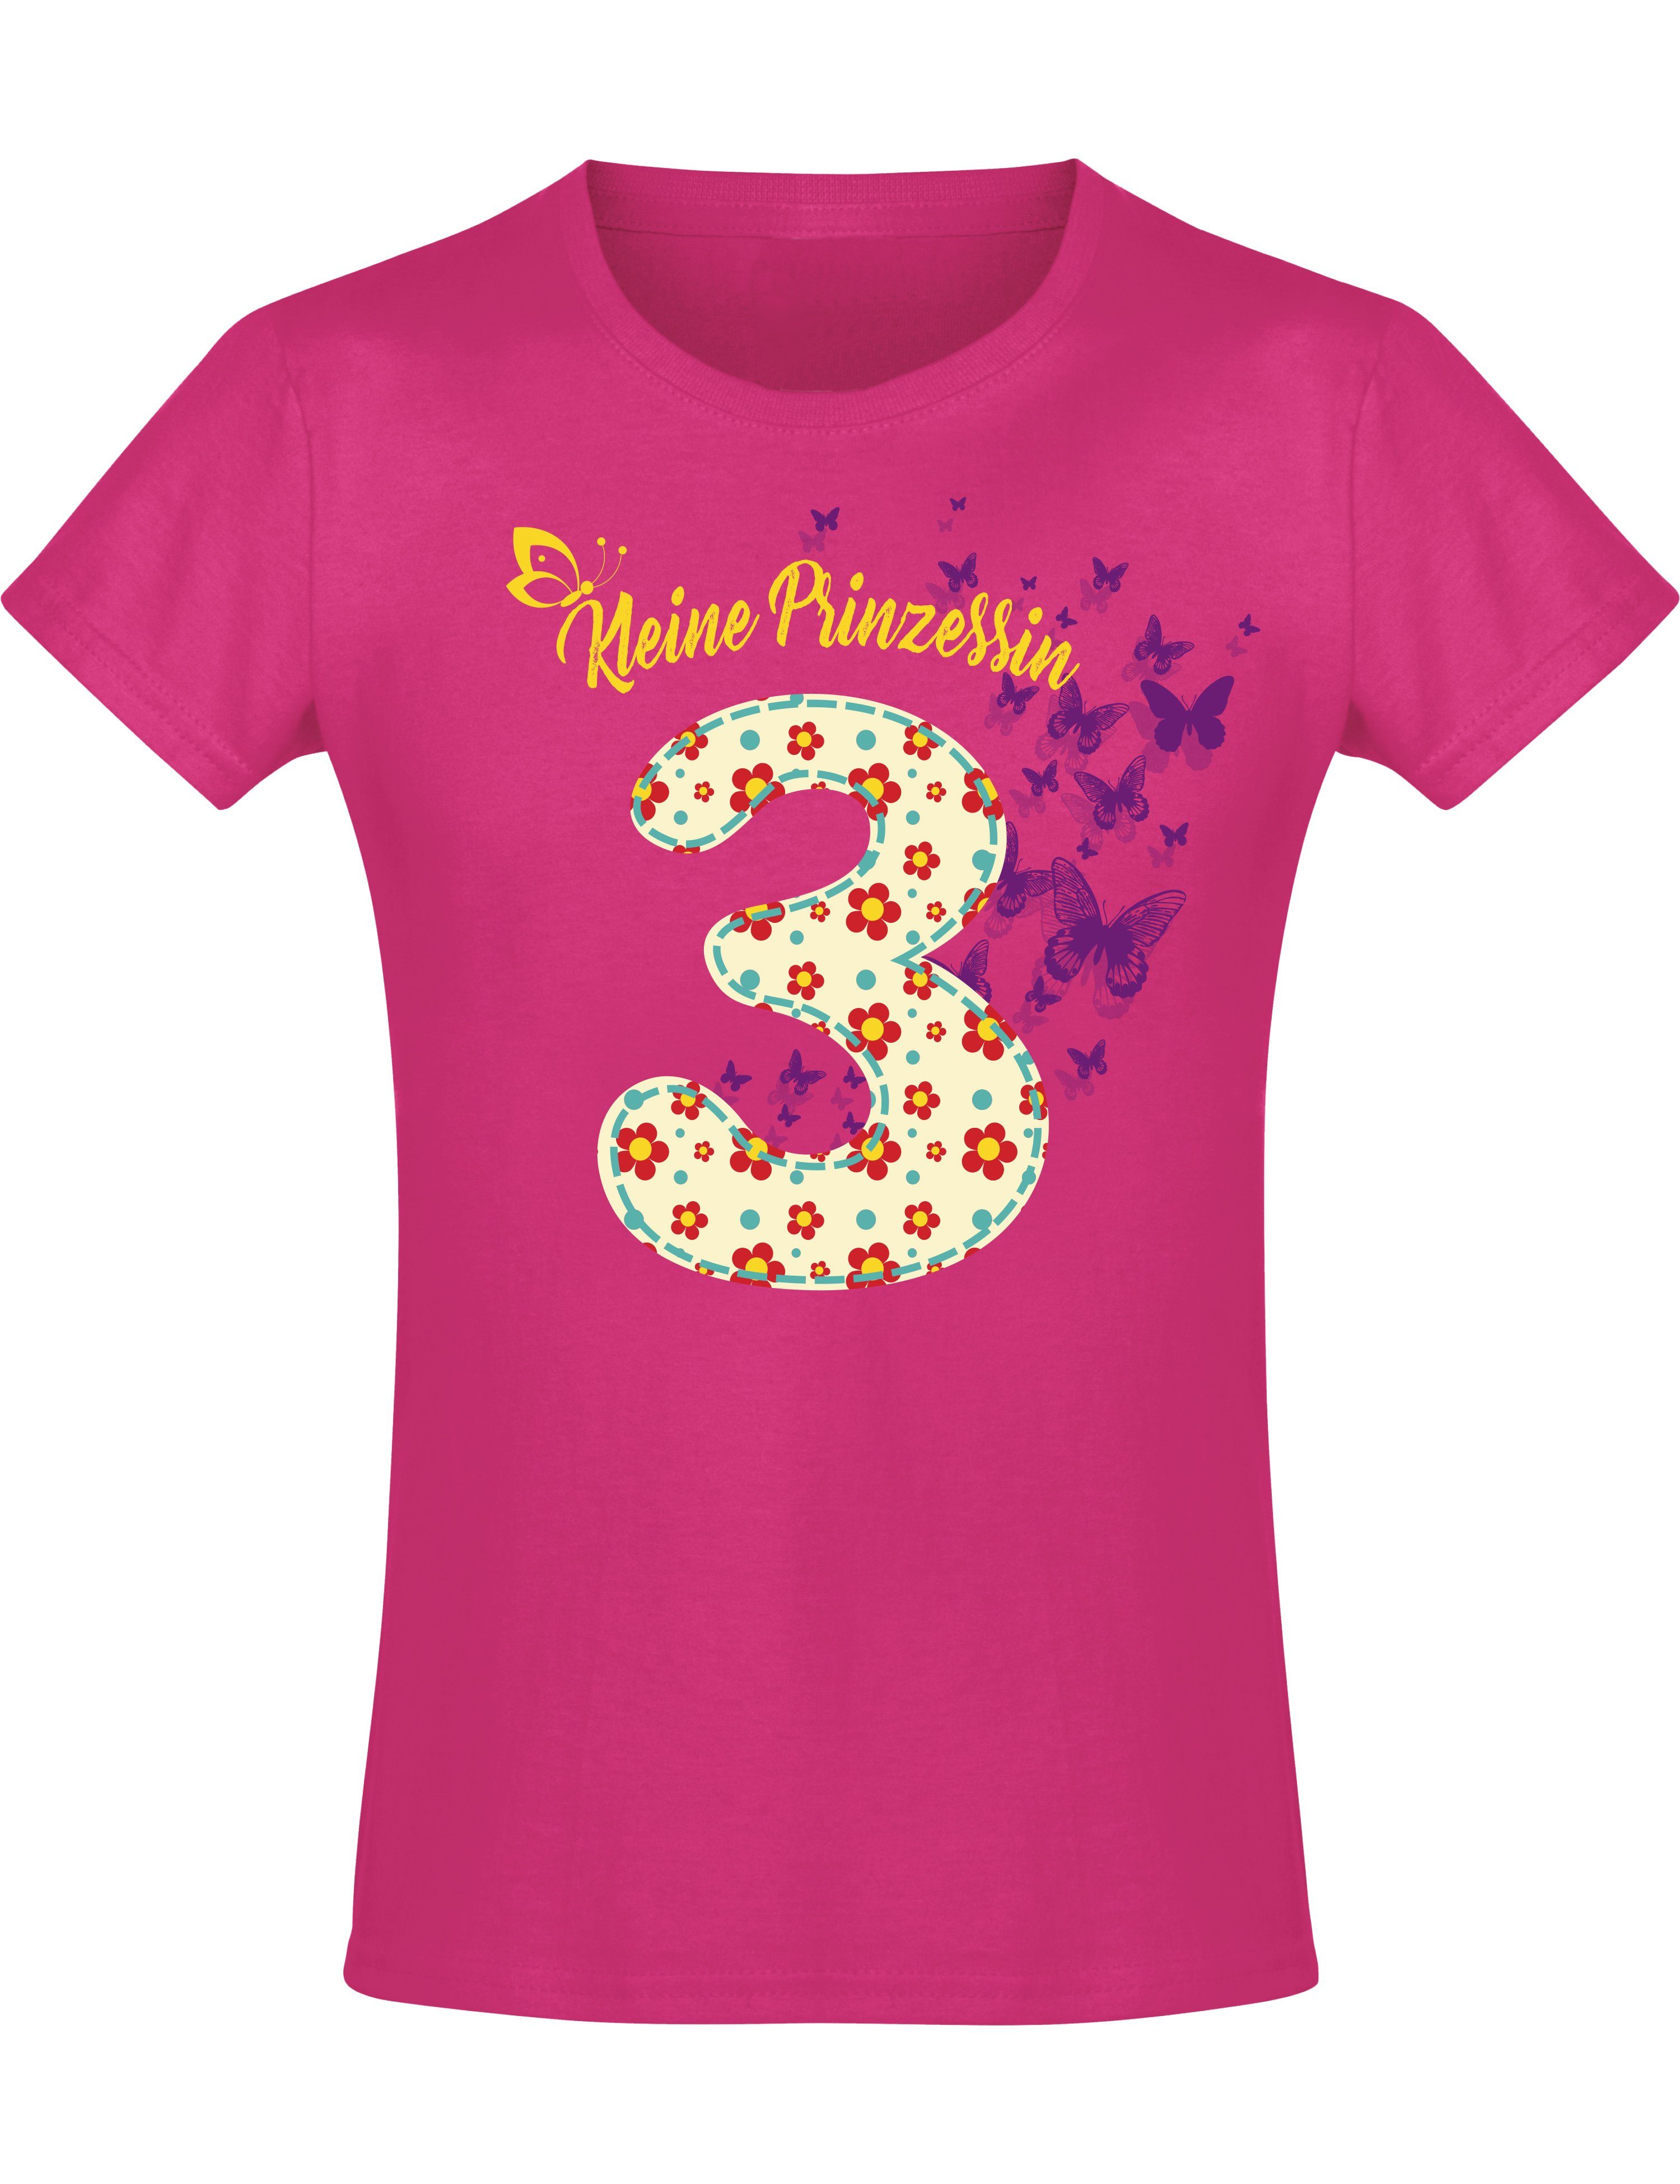 Baddery Print-Shirt Geburstagsgeschenk für Mädchen : 3 Jahre mit Blumen, hochwertiger Siebdruck, aus Baumwolle